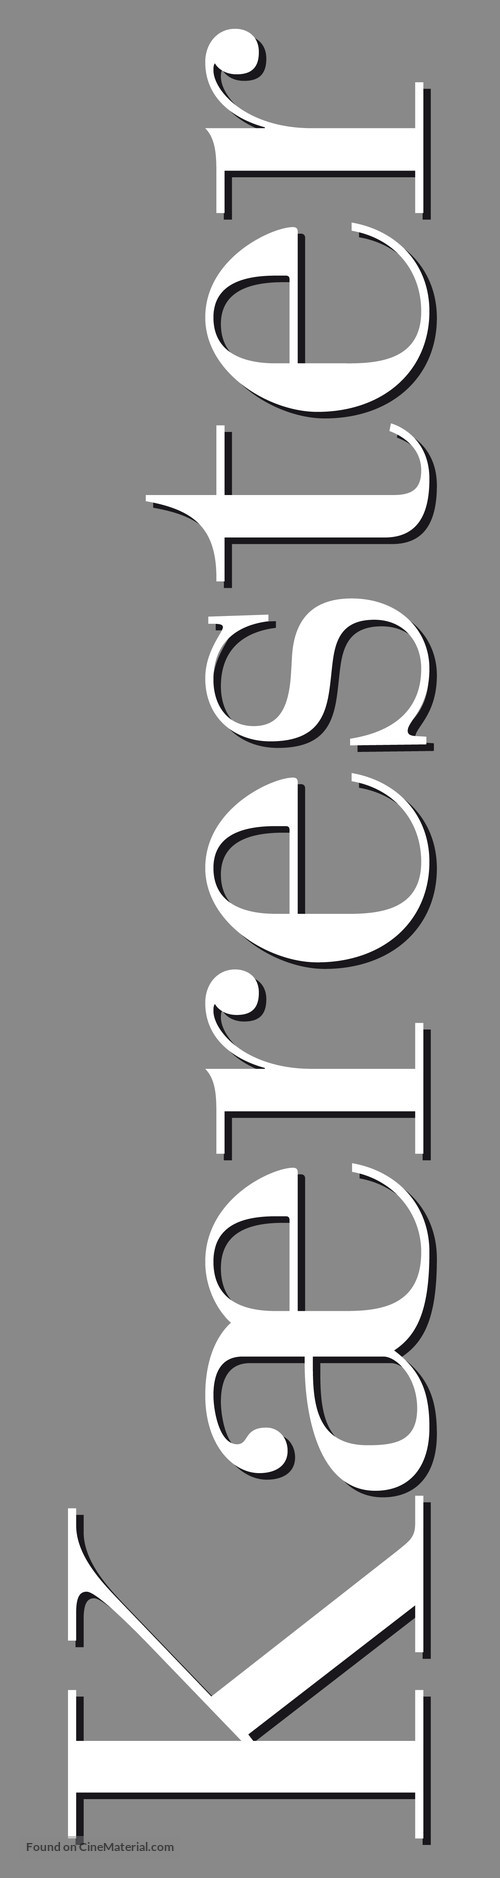 Prime - Danish Logo